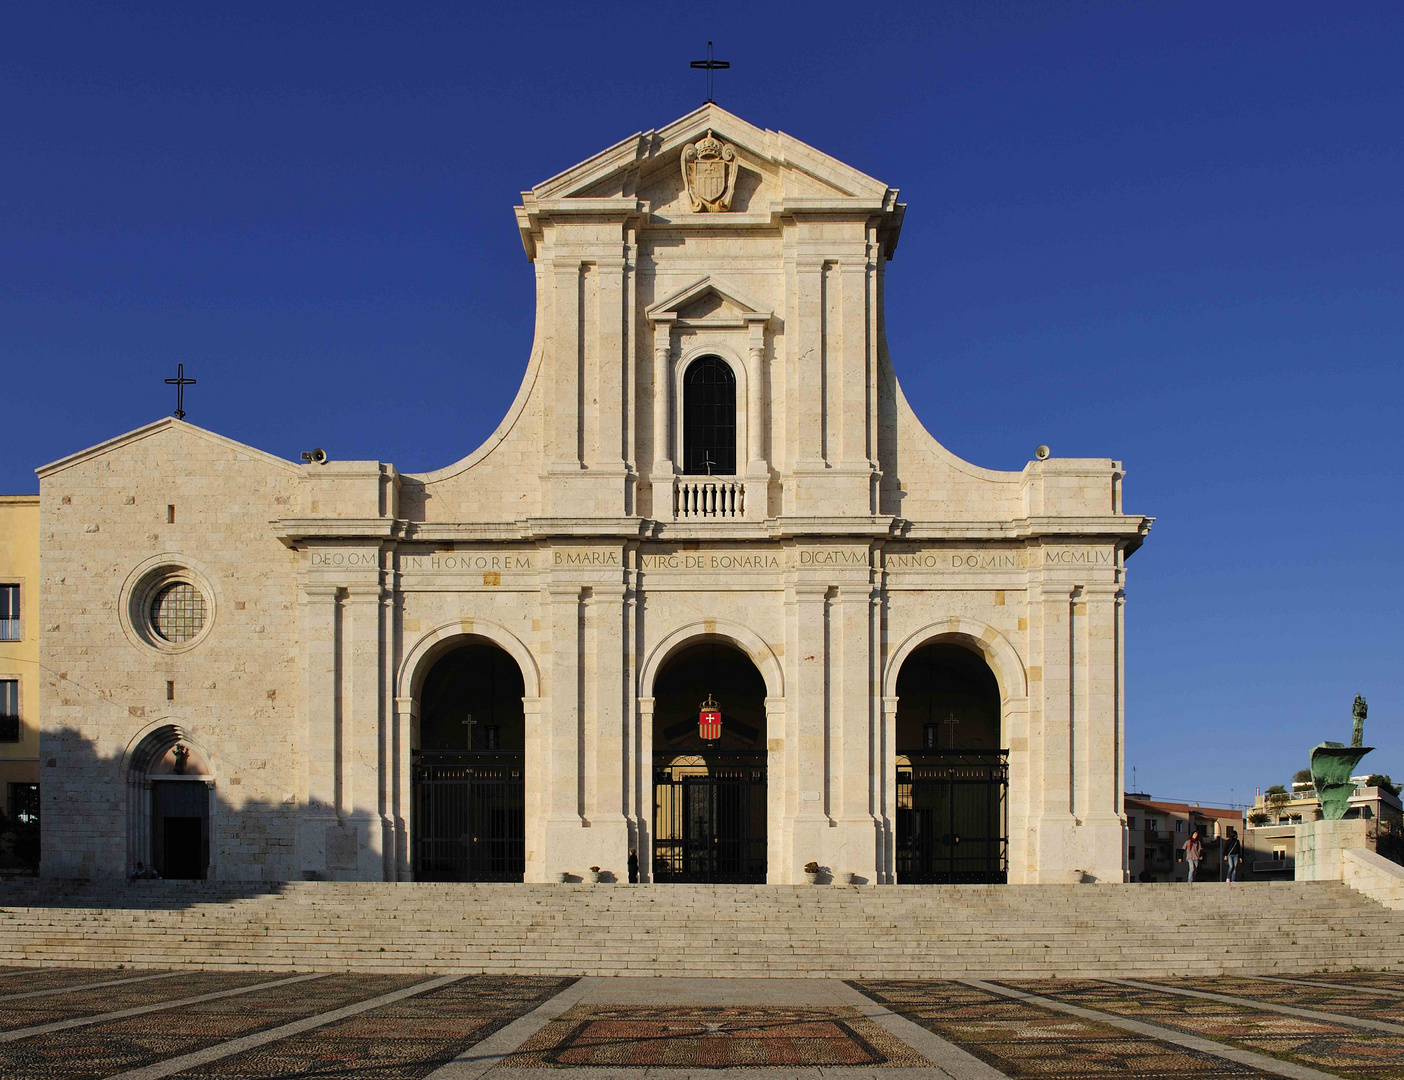 Nostra Signora di Bonaria in Cagliari